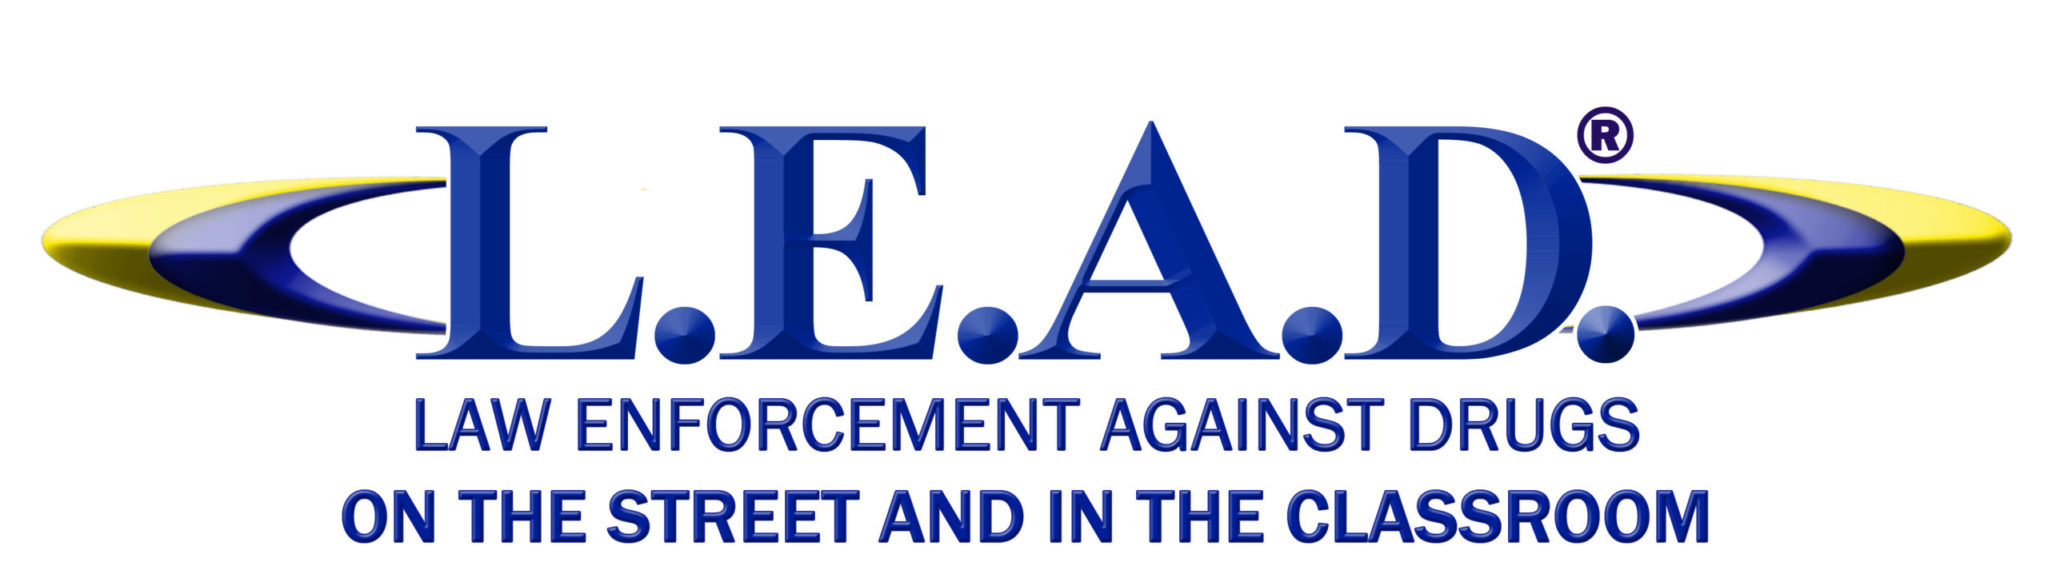 L.E.A.D. Protect Our Communities 5K Asbury Park logo on RaceRaves